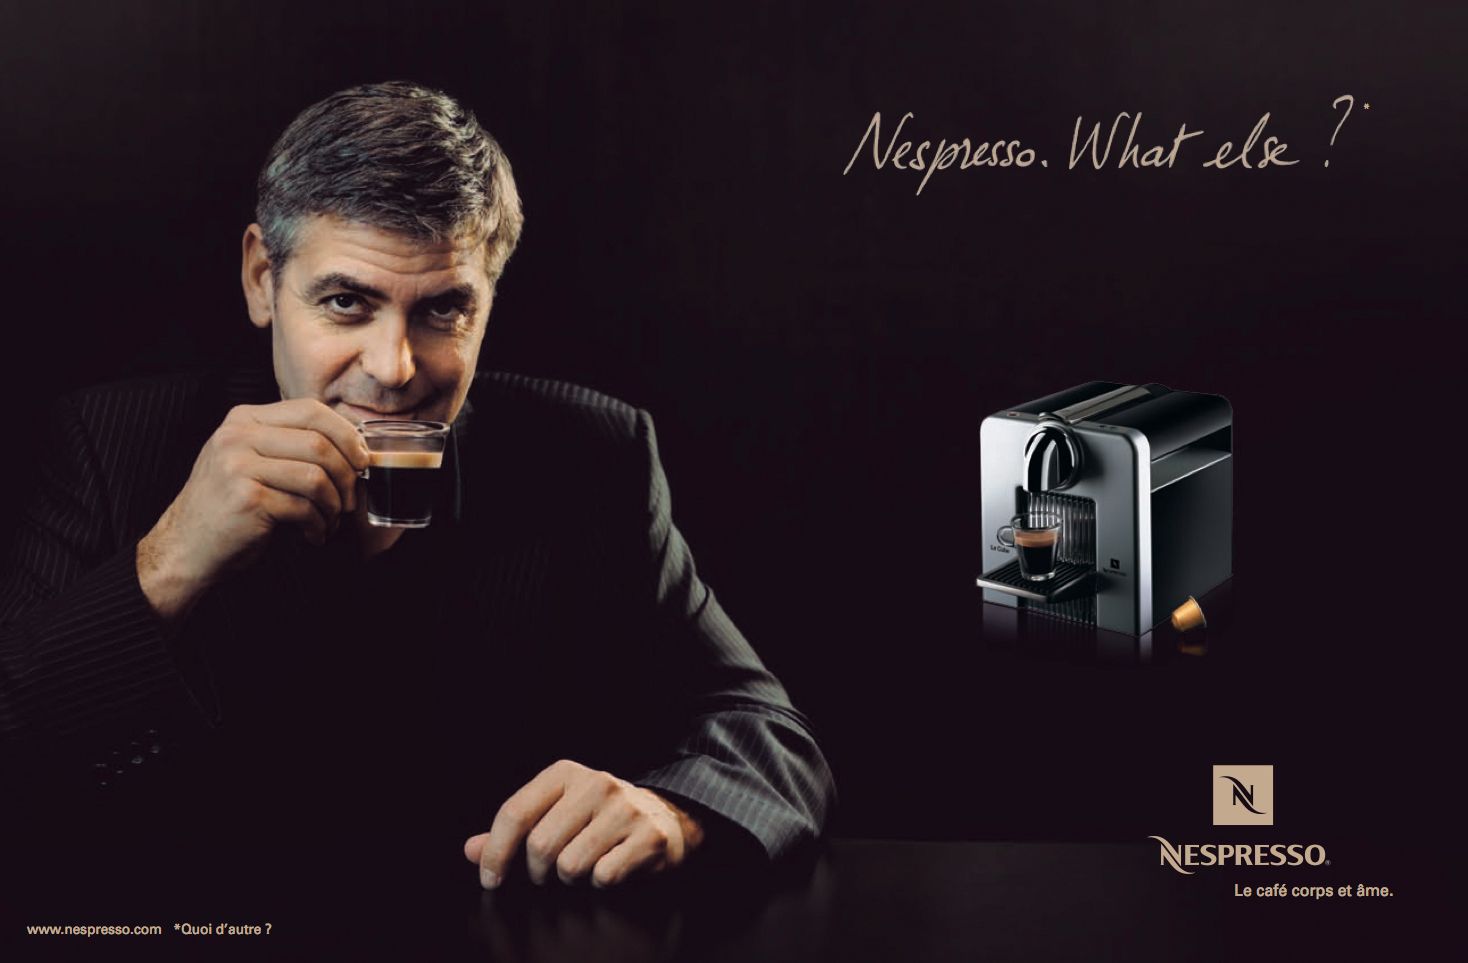 Nespresso aprovecha el efecto halo eligiendo a George Clooney para que promocione su producto.